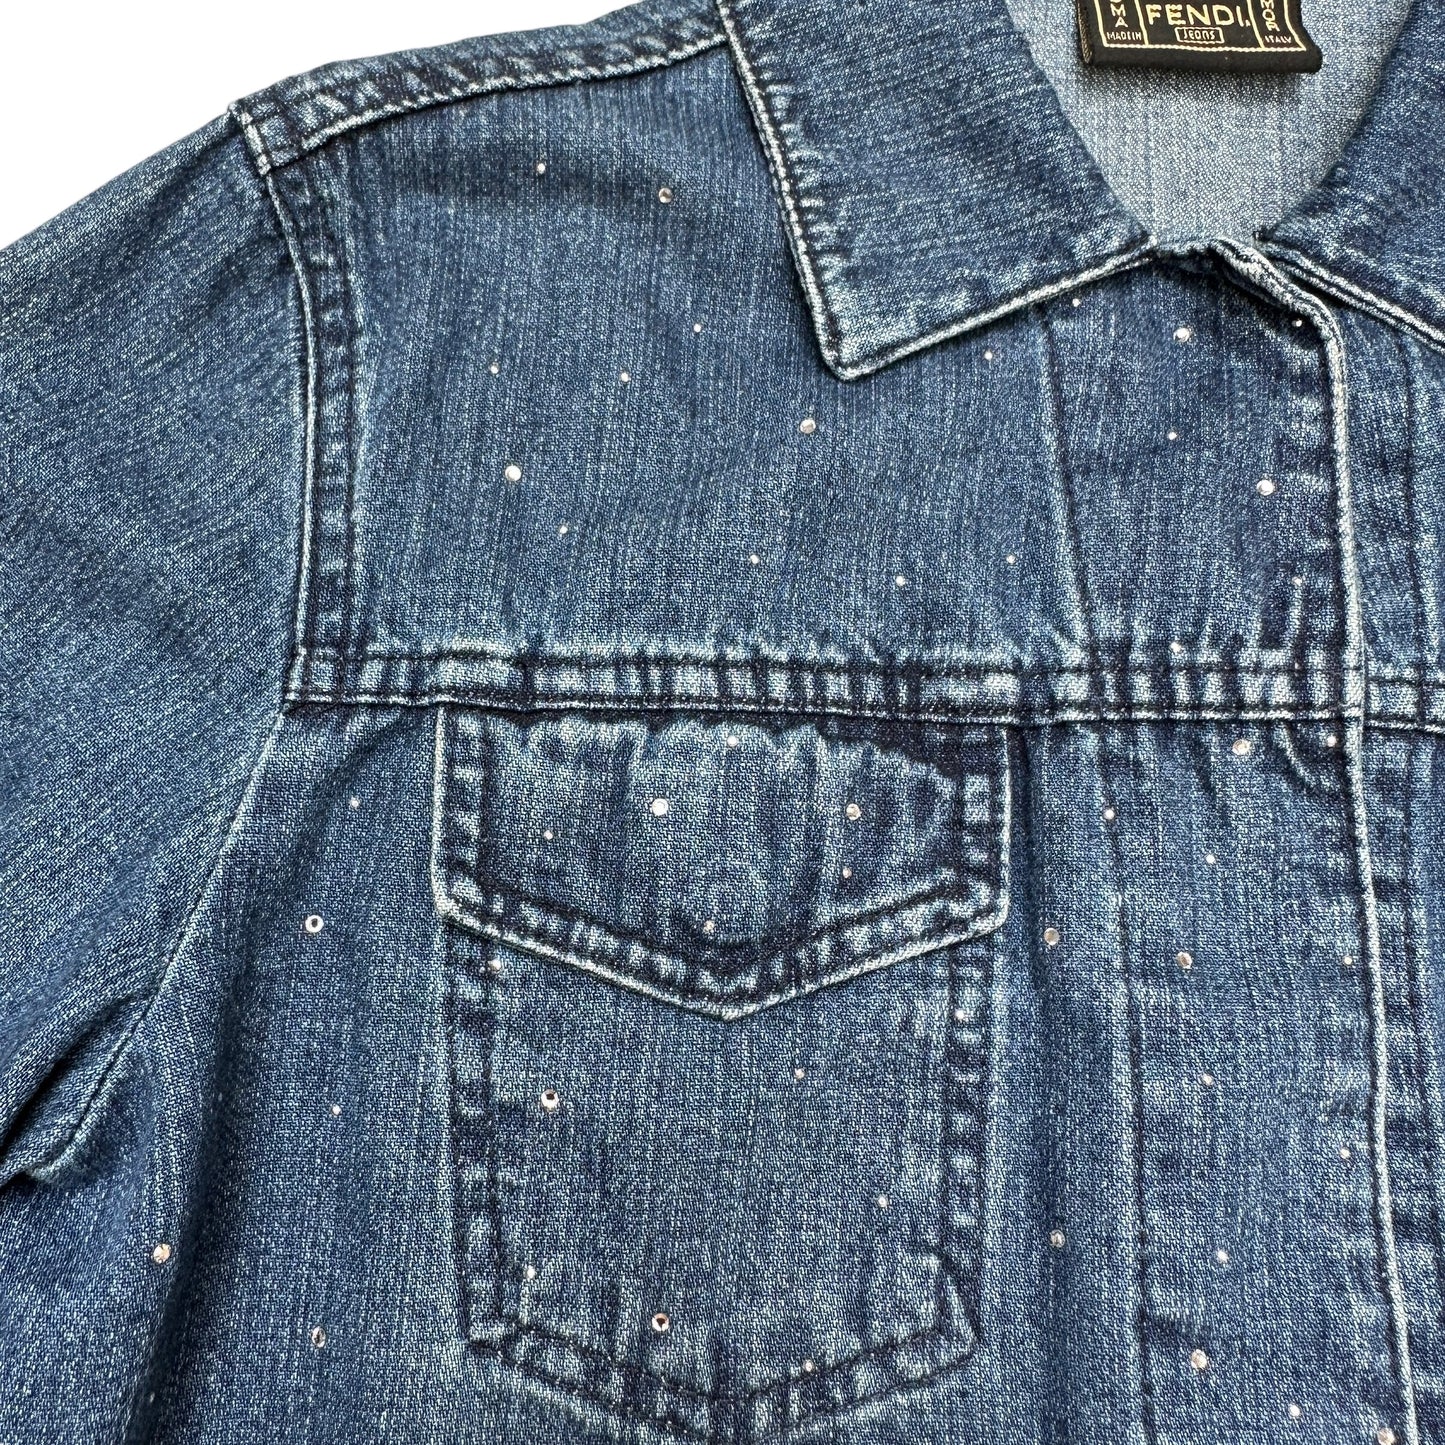 Vintage Blue Denim Jeans Jacket w/Crystals - M